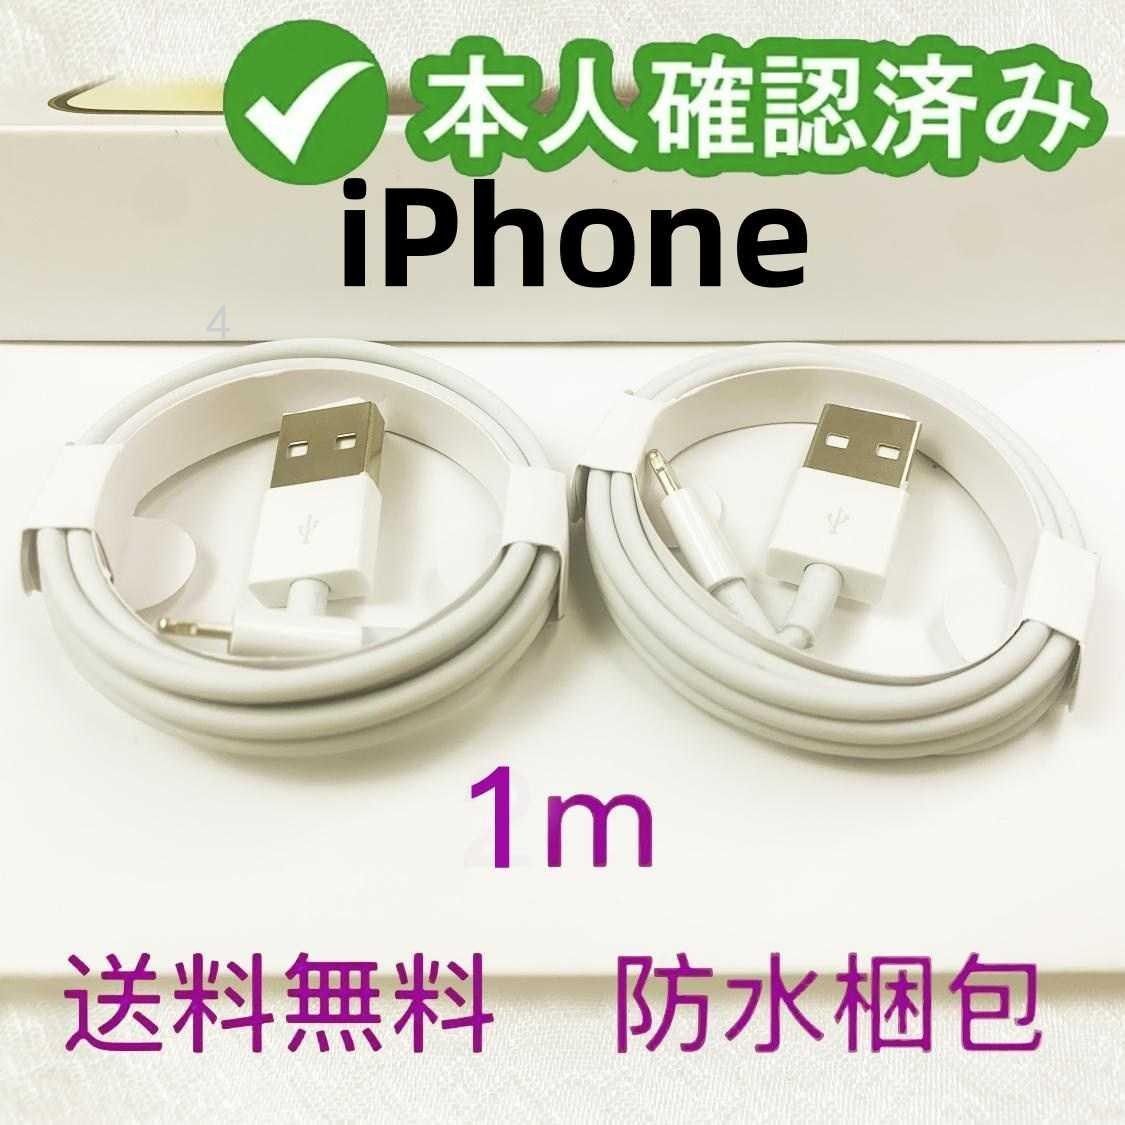 2本1m iPhone 充電器 Apple純正品質 品質 新品 充電ケーブル 白 データ